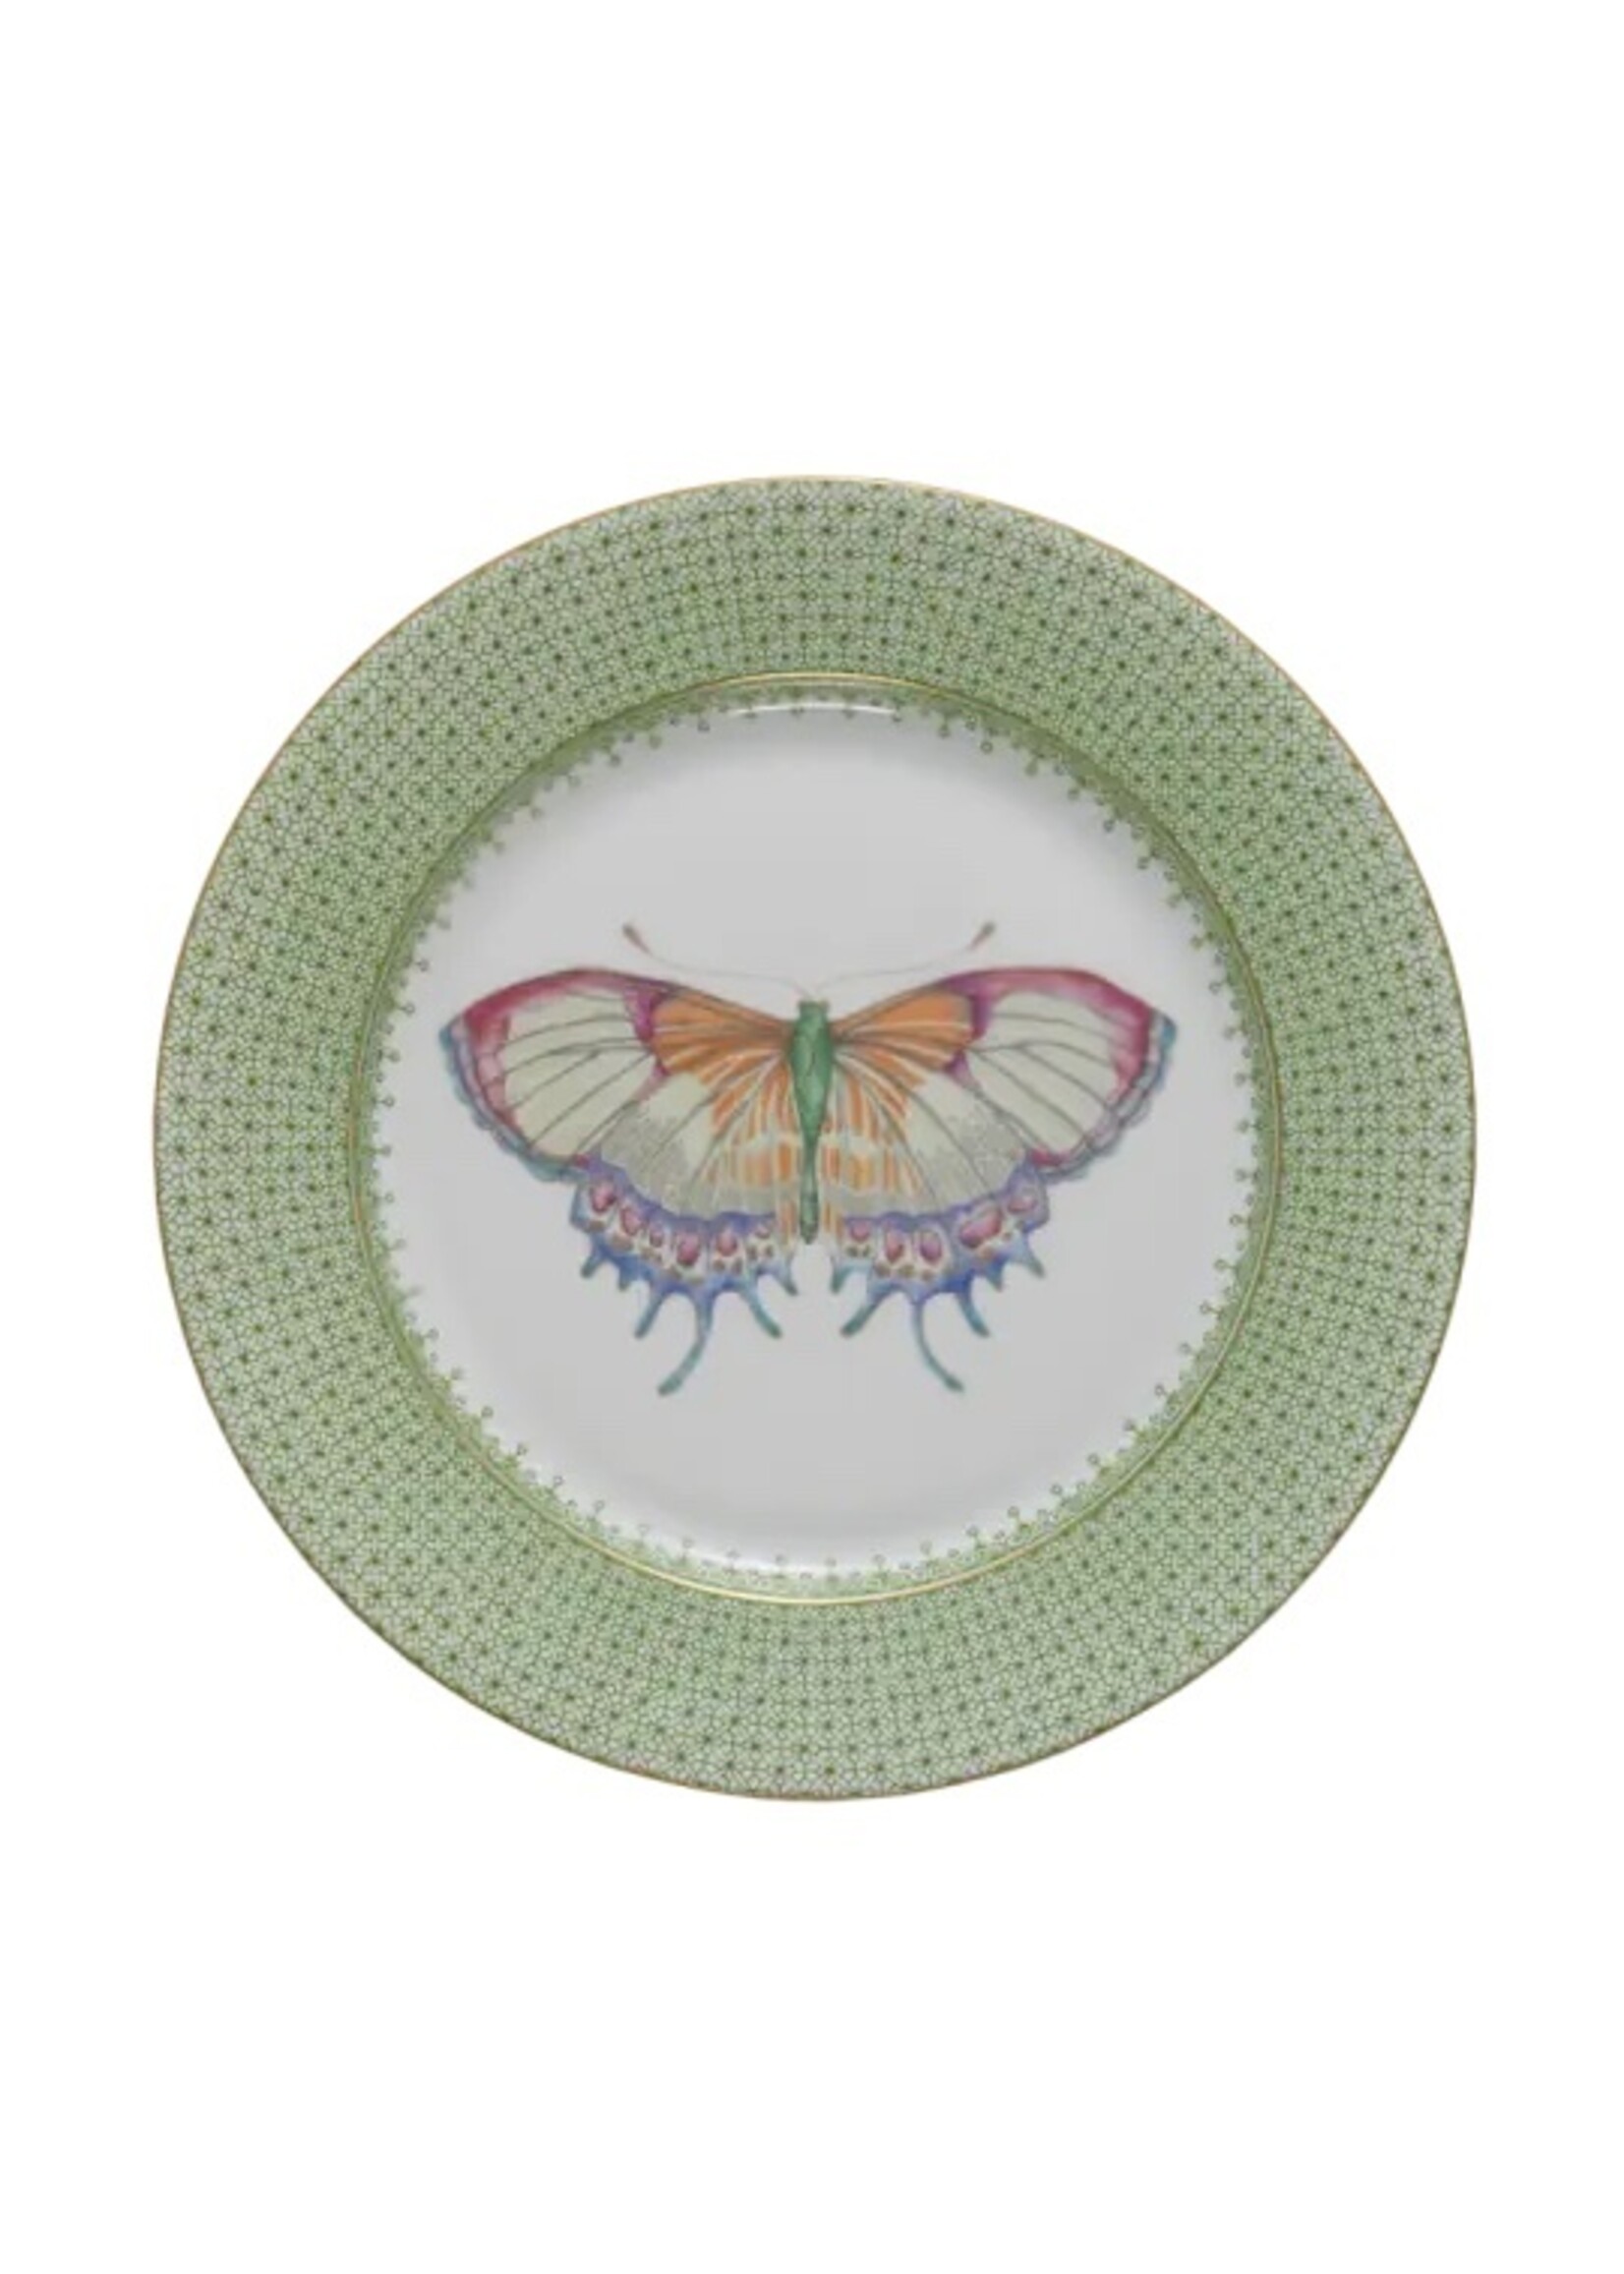 Mottahedeh Mottahedeh Apple Green Lace Dessert Plate w/Butterfly